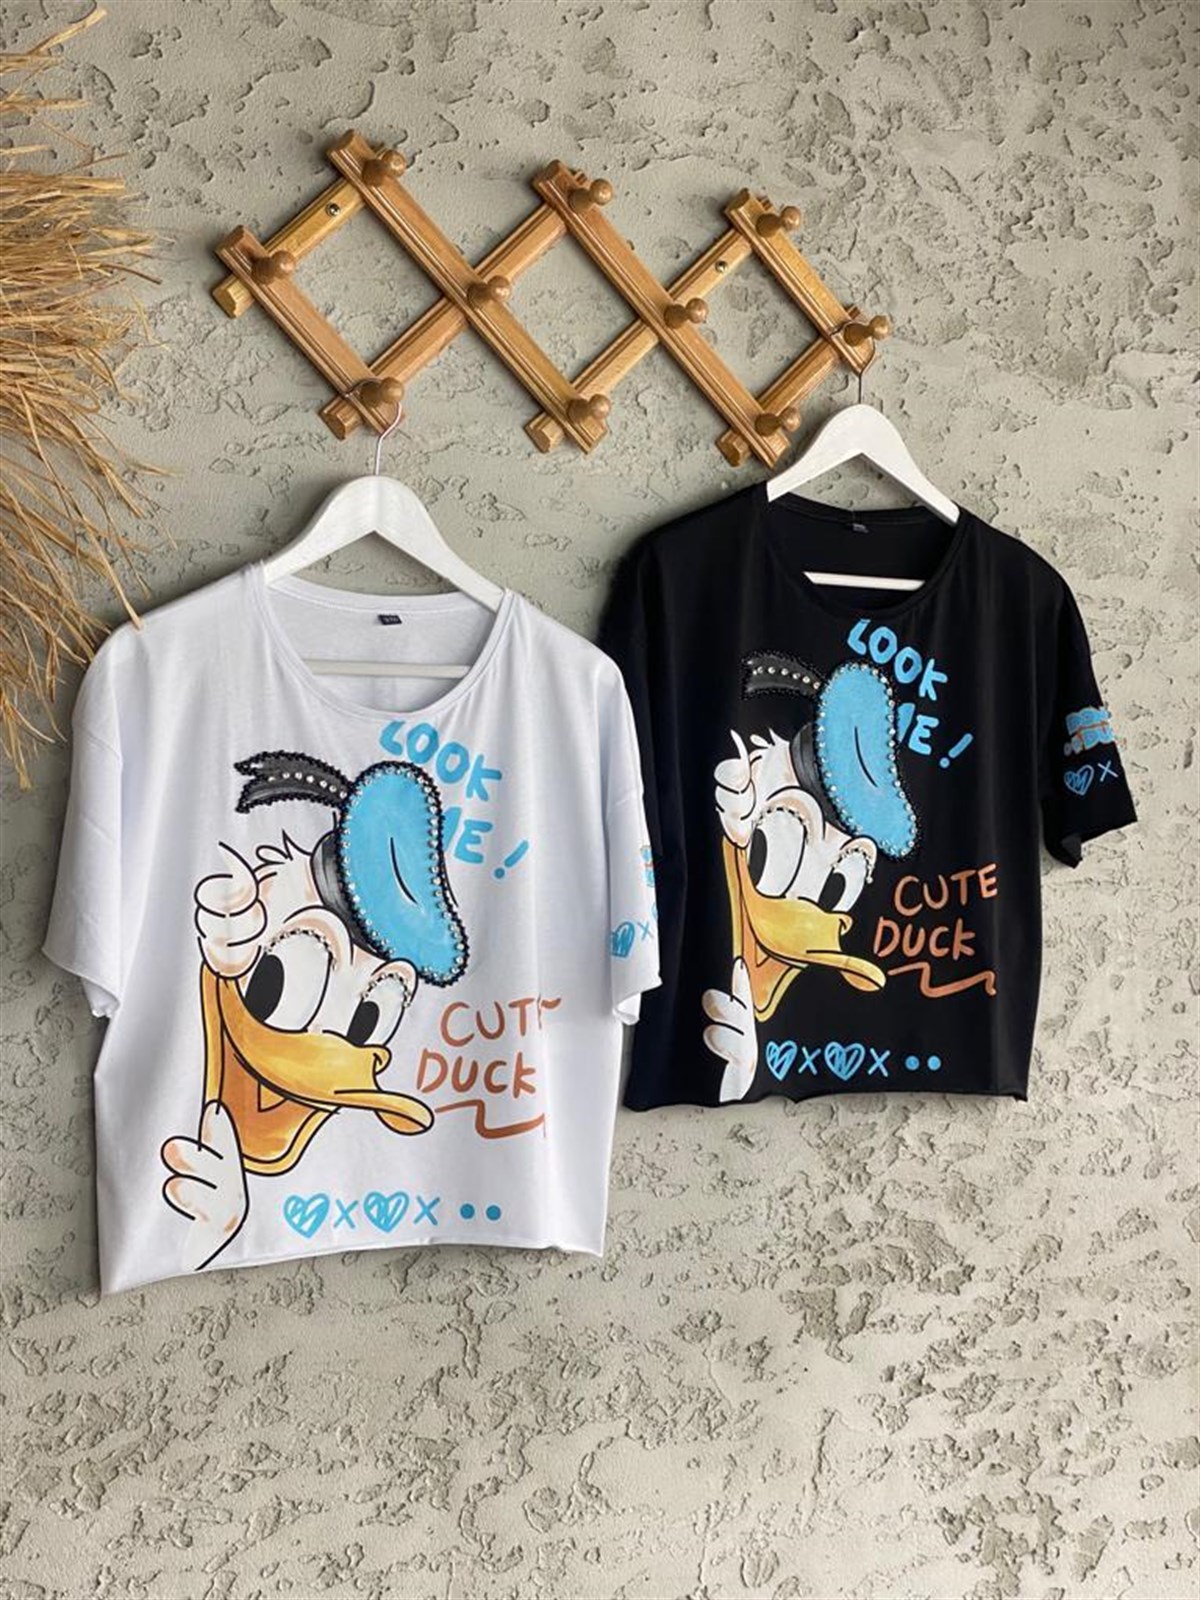 Taş İşcilikli Daffy Duck Baskılı Tshirt (Beyaz/Siyah) 79,99 ₺